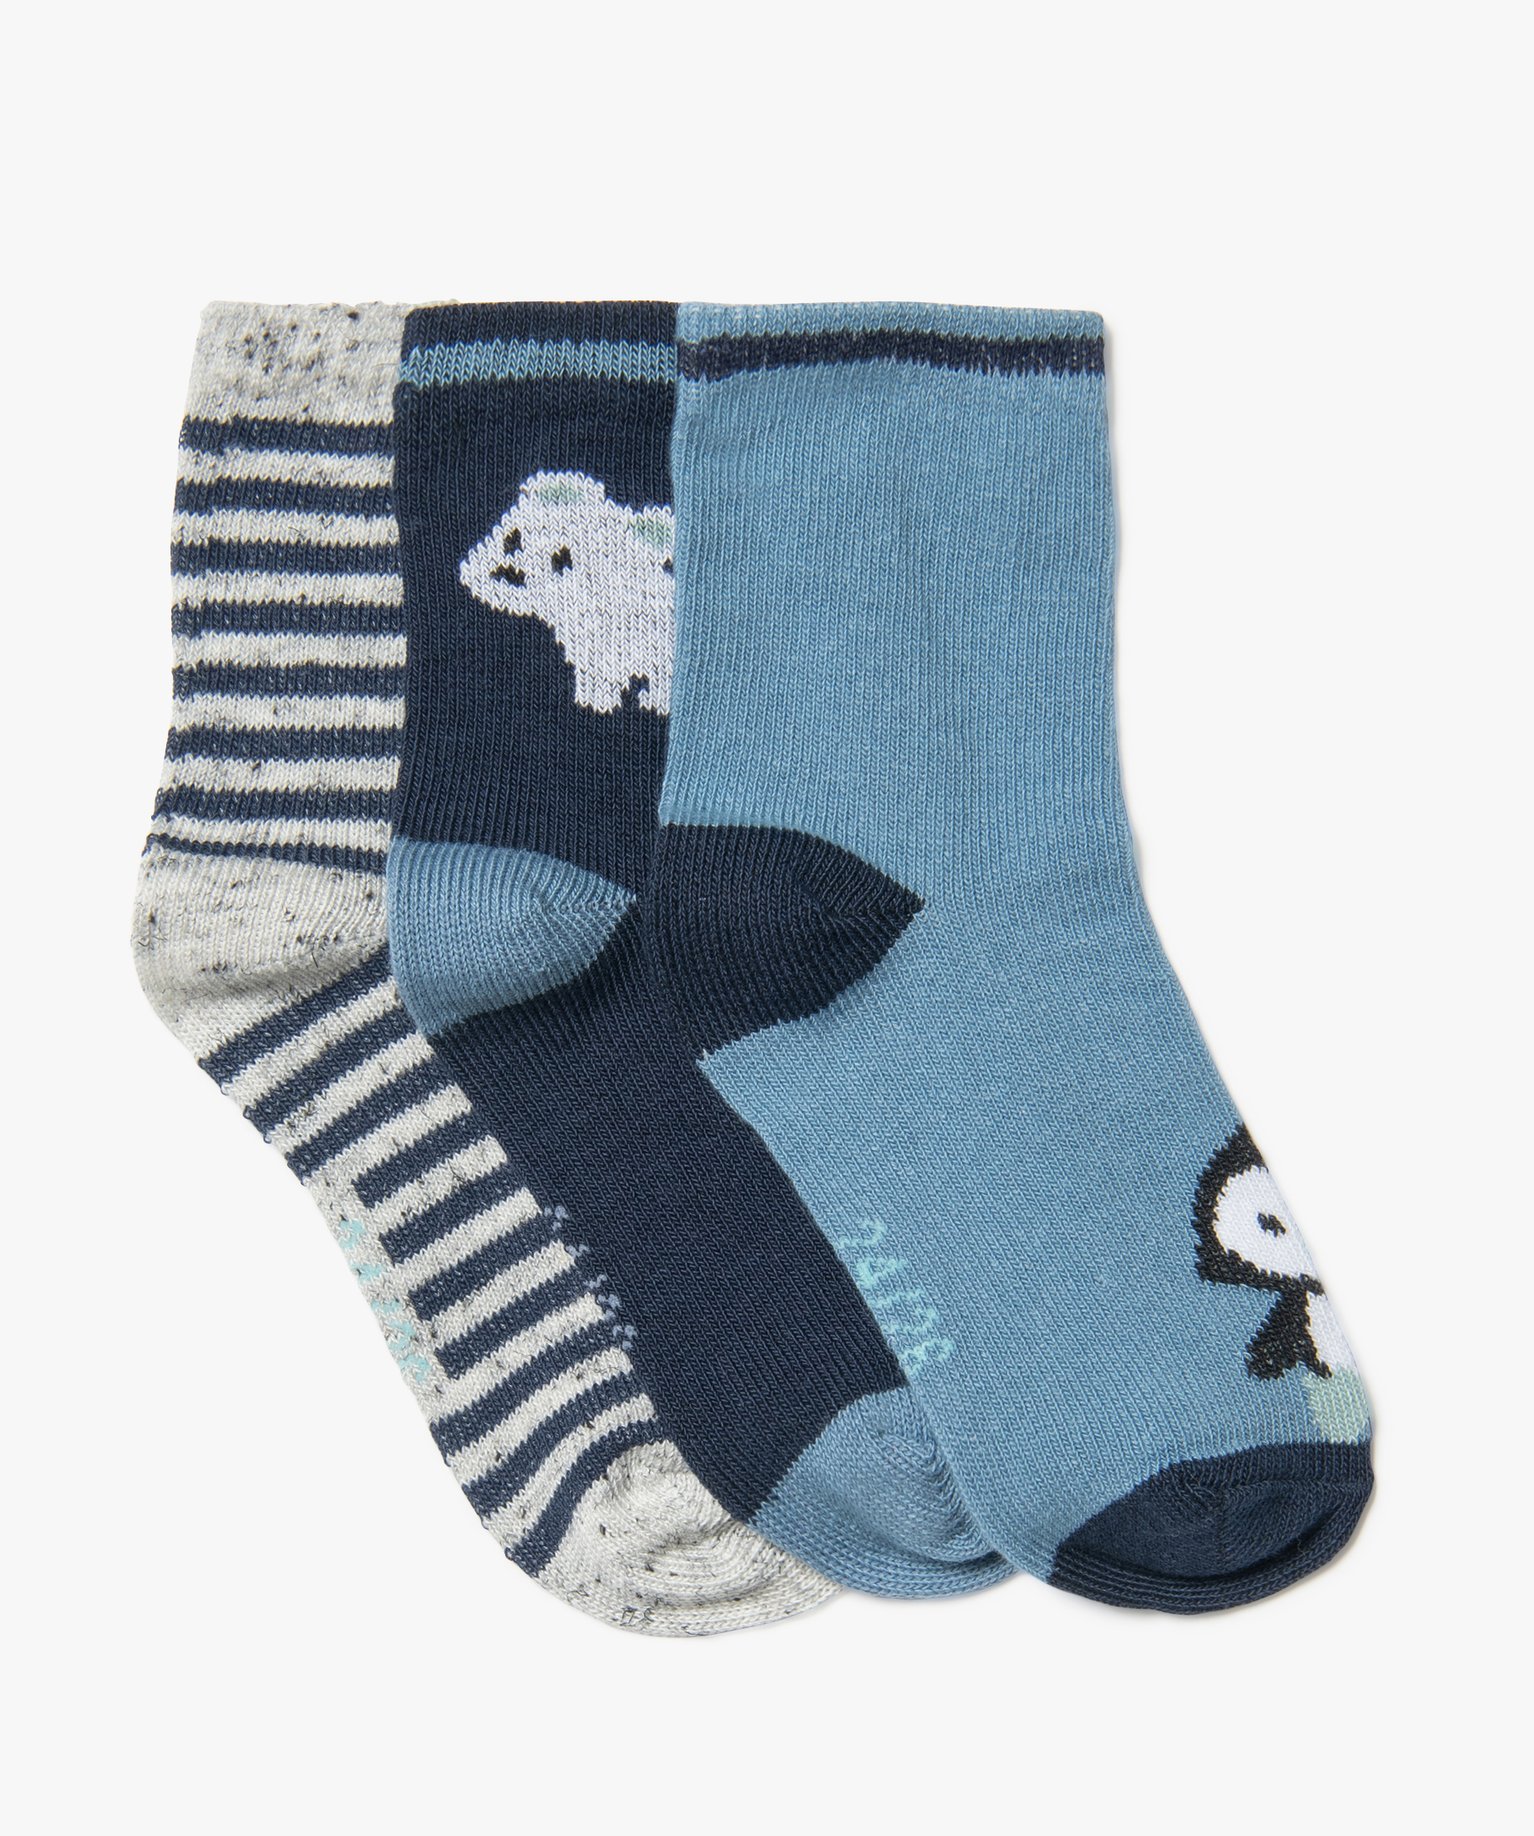 Chaussettes hautes imprimé animaux bébé fille (lot de 3) - 21/23 - bleu fonce - GEMO